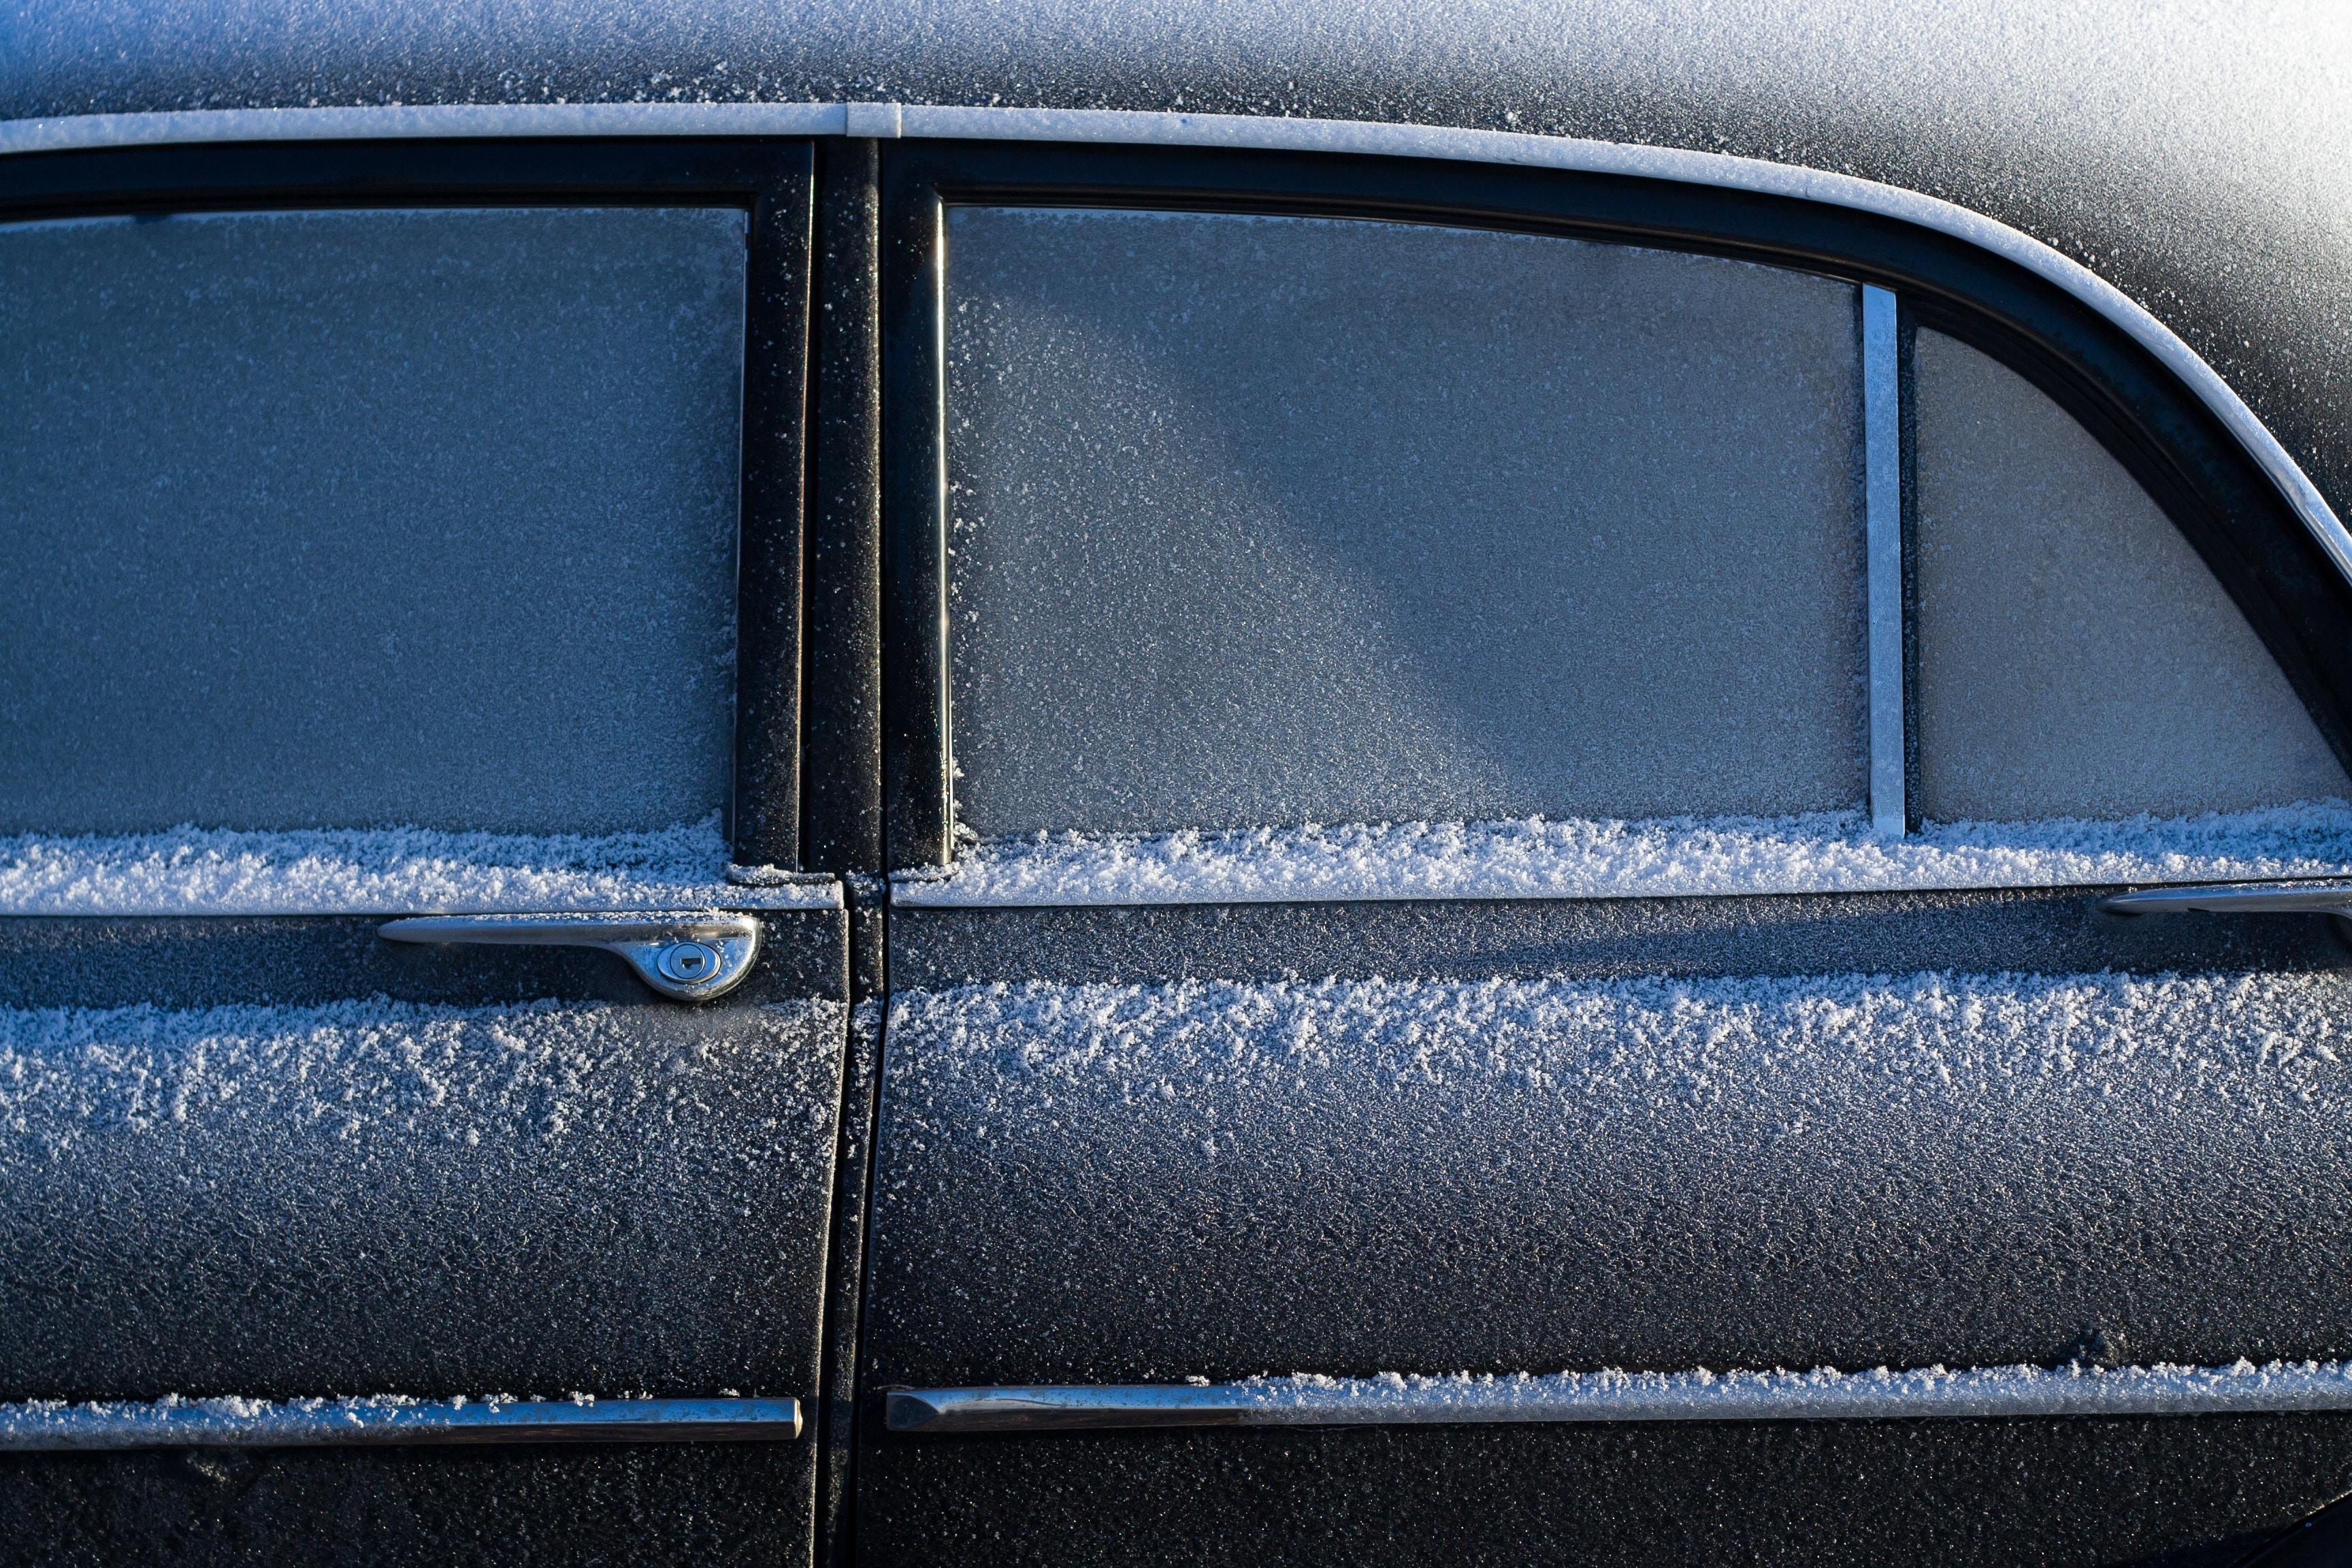 Parabrisas y ventanas con hielo en un coche. Juha Lakaniemi para Unsplash